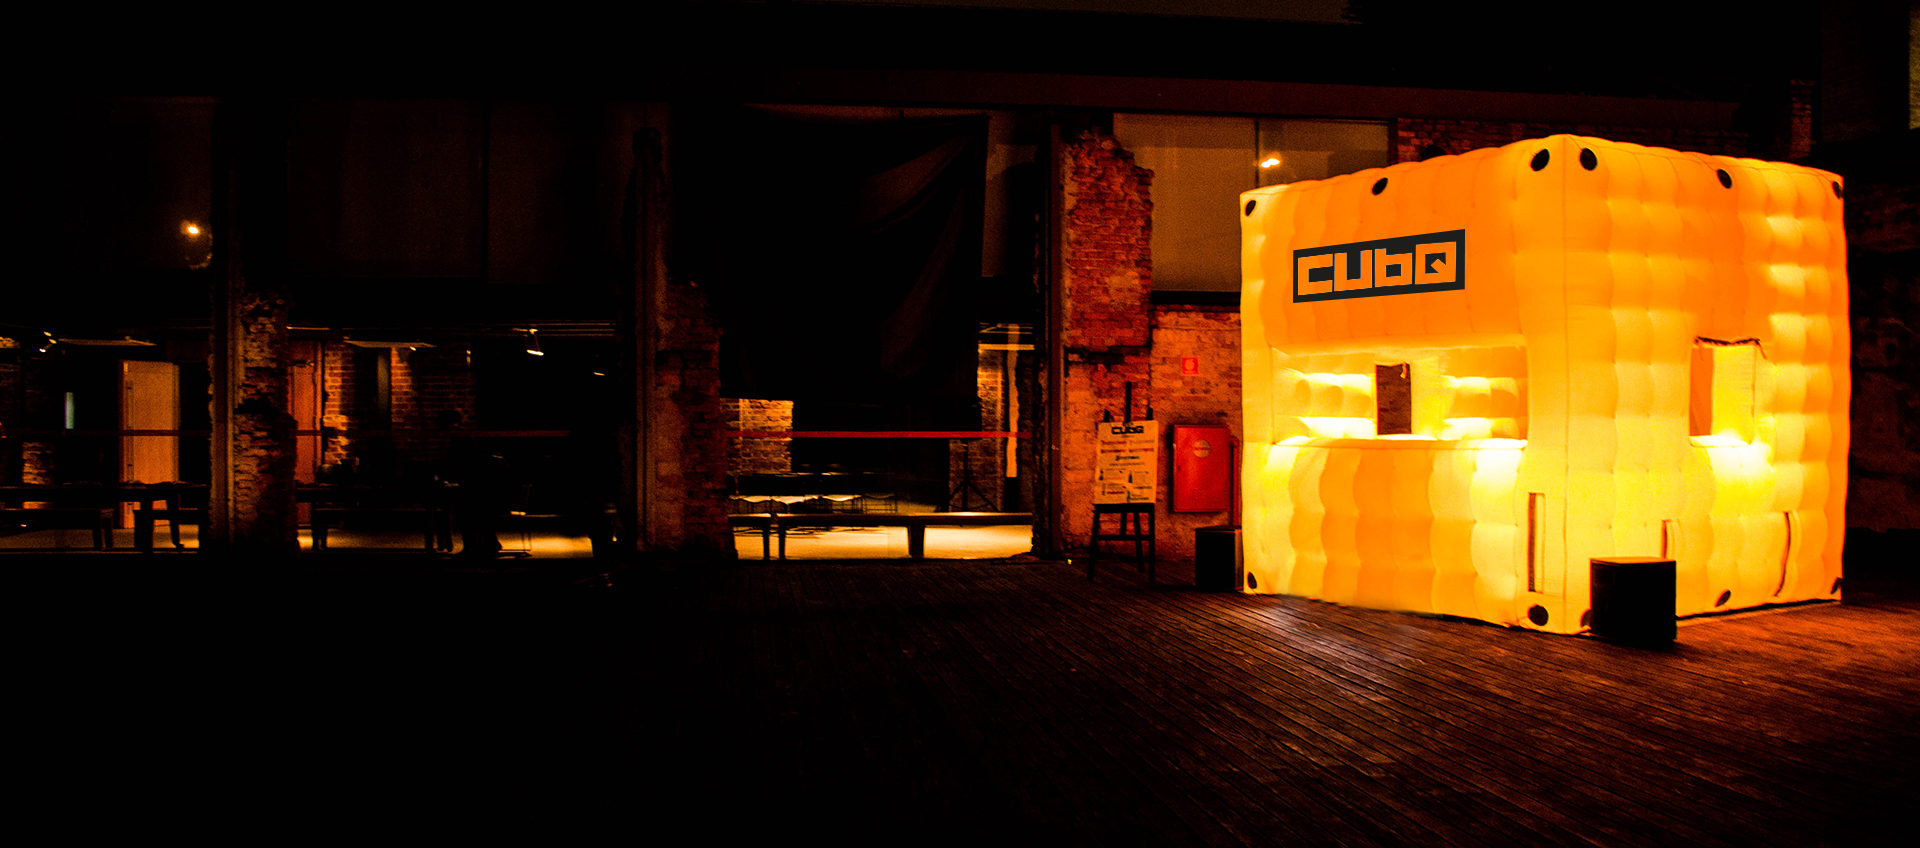 cubq - Cubq, um bar inflável, surpreendente, aqui em São Paulo!